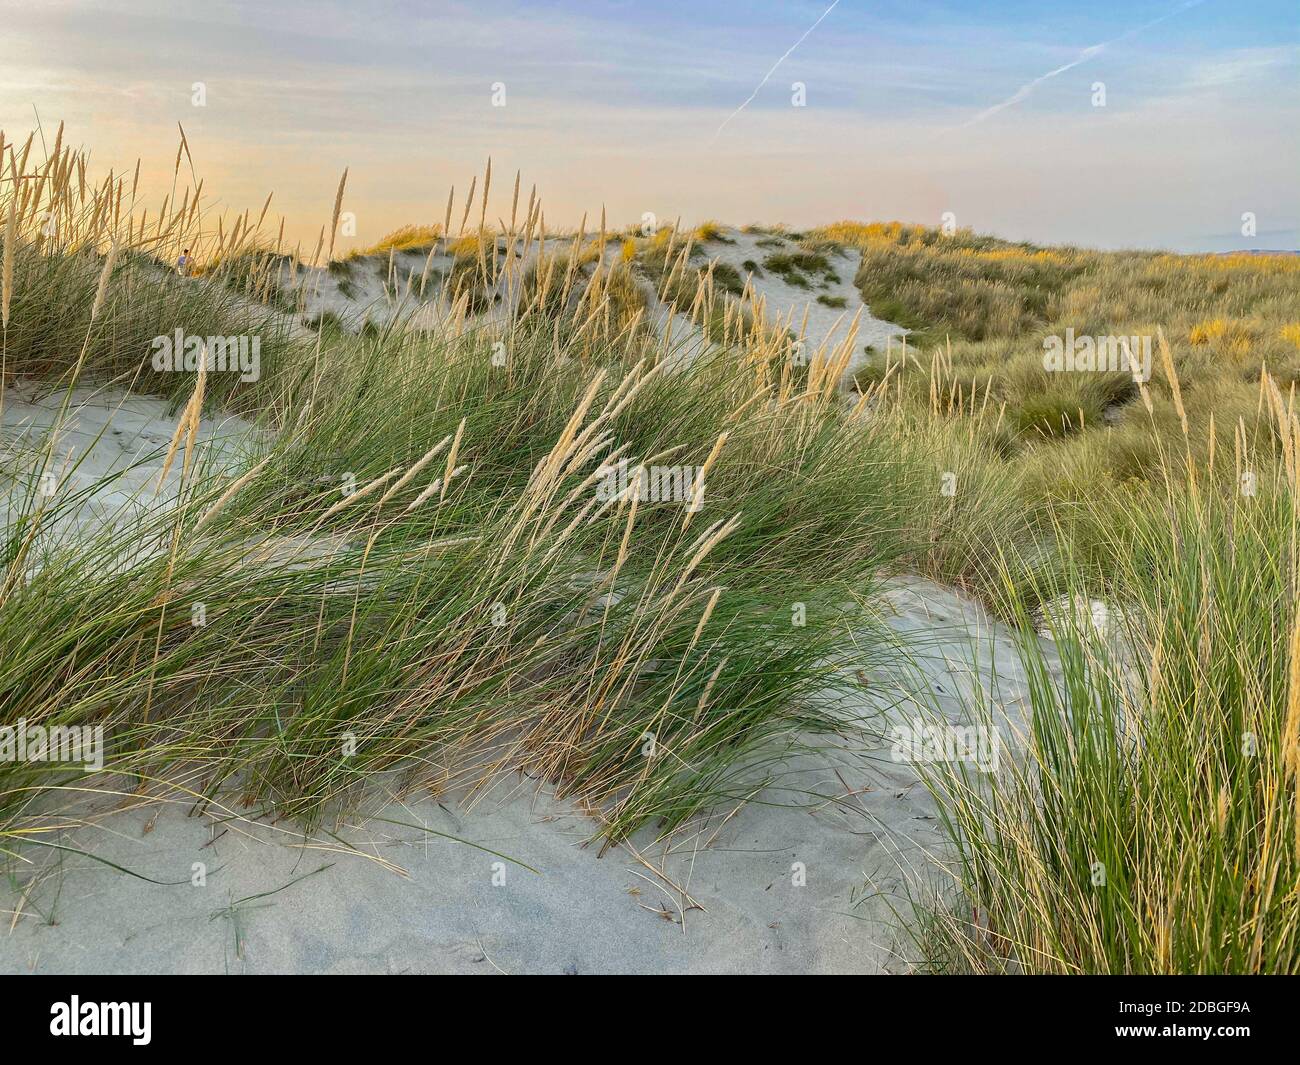 Les dunes de sable offrent une protection pour les pique-niques et un paysage merveilleux pour les longues promenades estivales. Banque D'Images